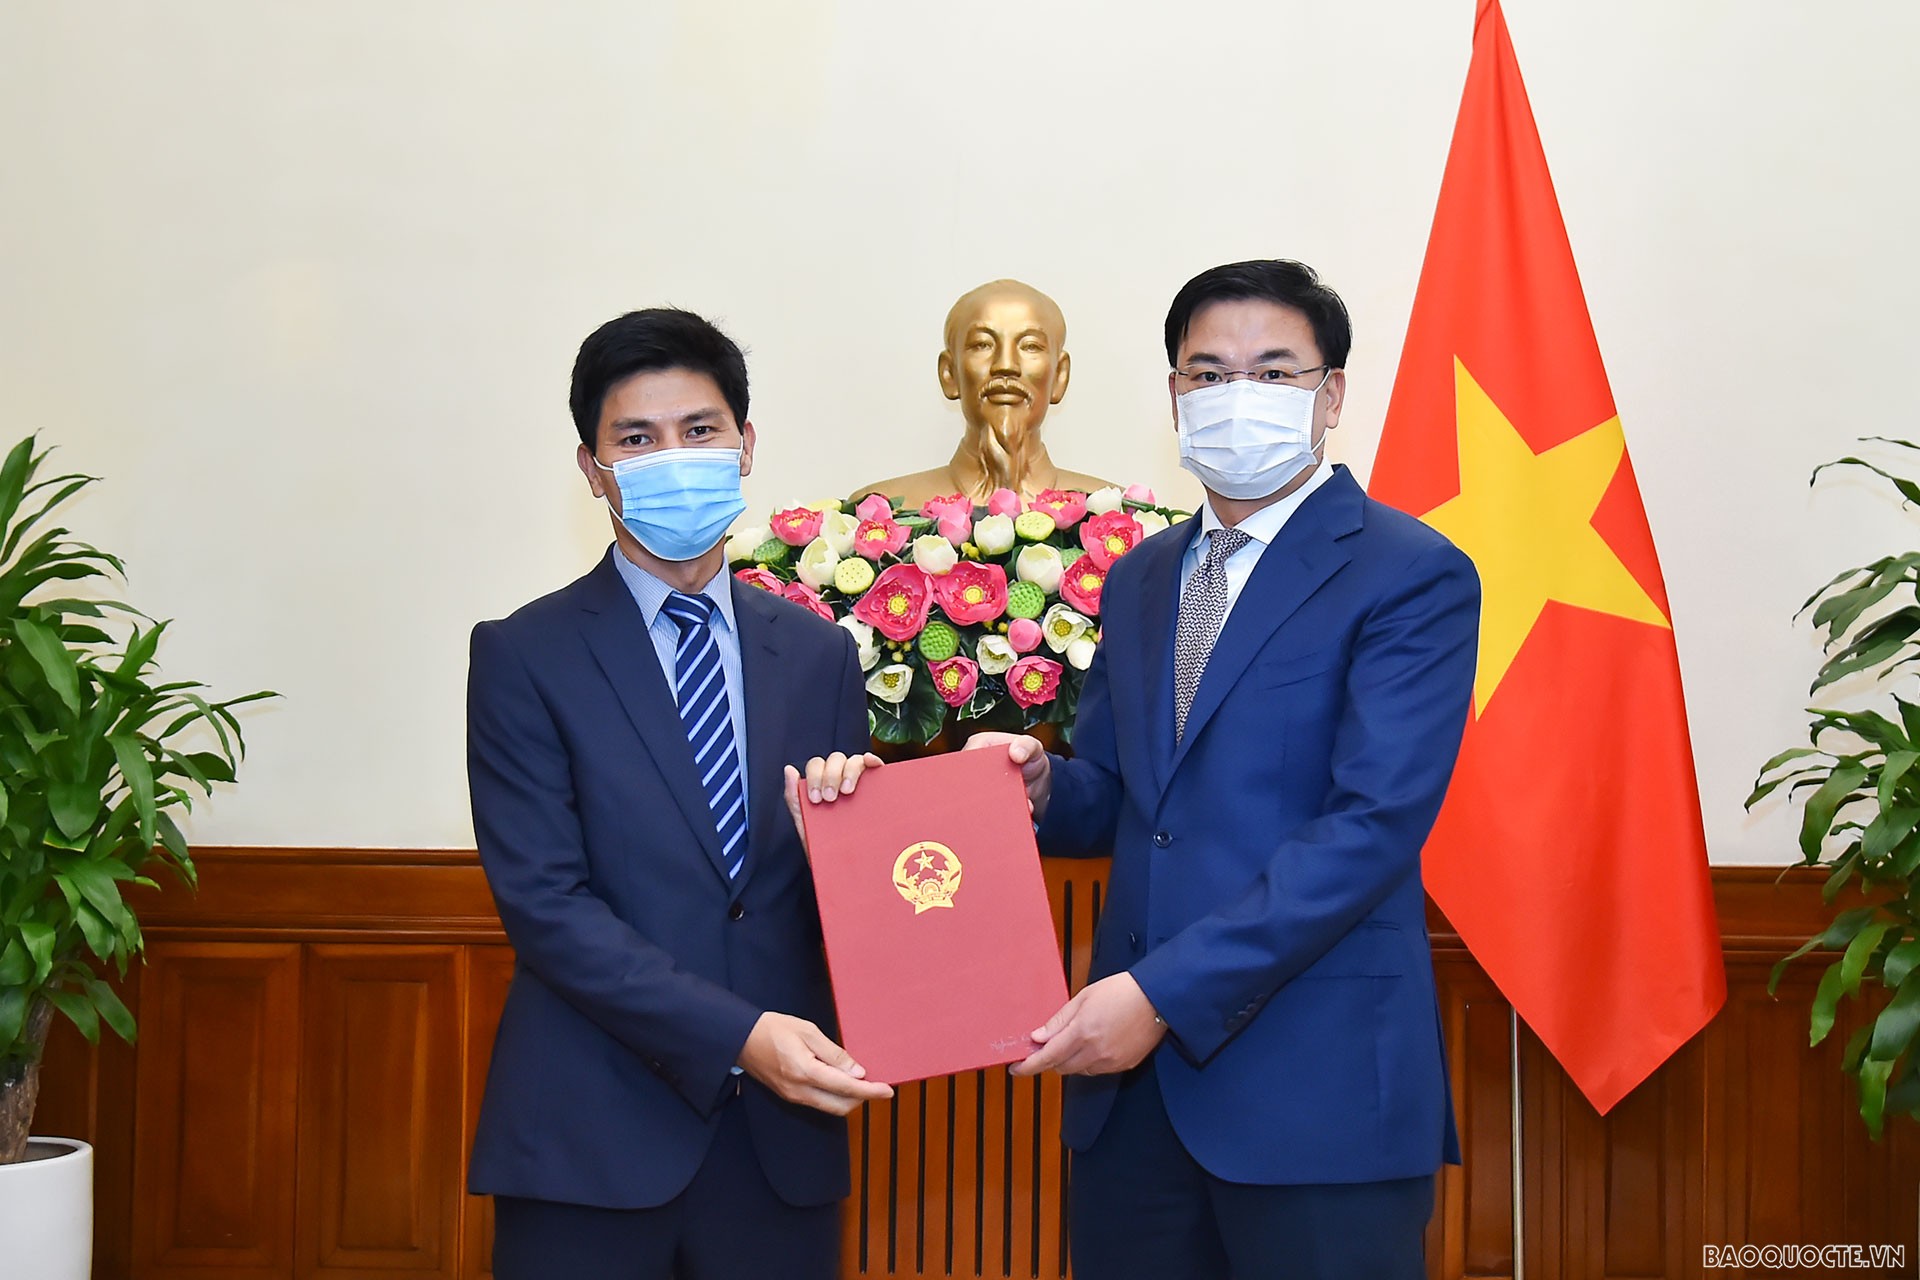 Thứ trưởng Ngoại giao Phạm Quang Hiệu đã trao quyết định bổ nhiệm ông Nghiêm Xuân Hòa, Tập sự Phó Vụ trưởng, Vụ Tổ chức Cán bộ, giữ chức Phó Vụ trưởng, Vụ Tổ chức Cán bộ.